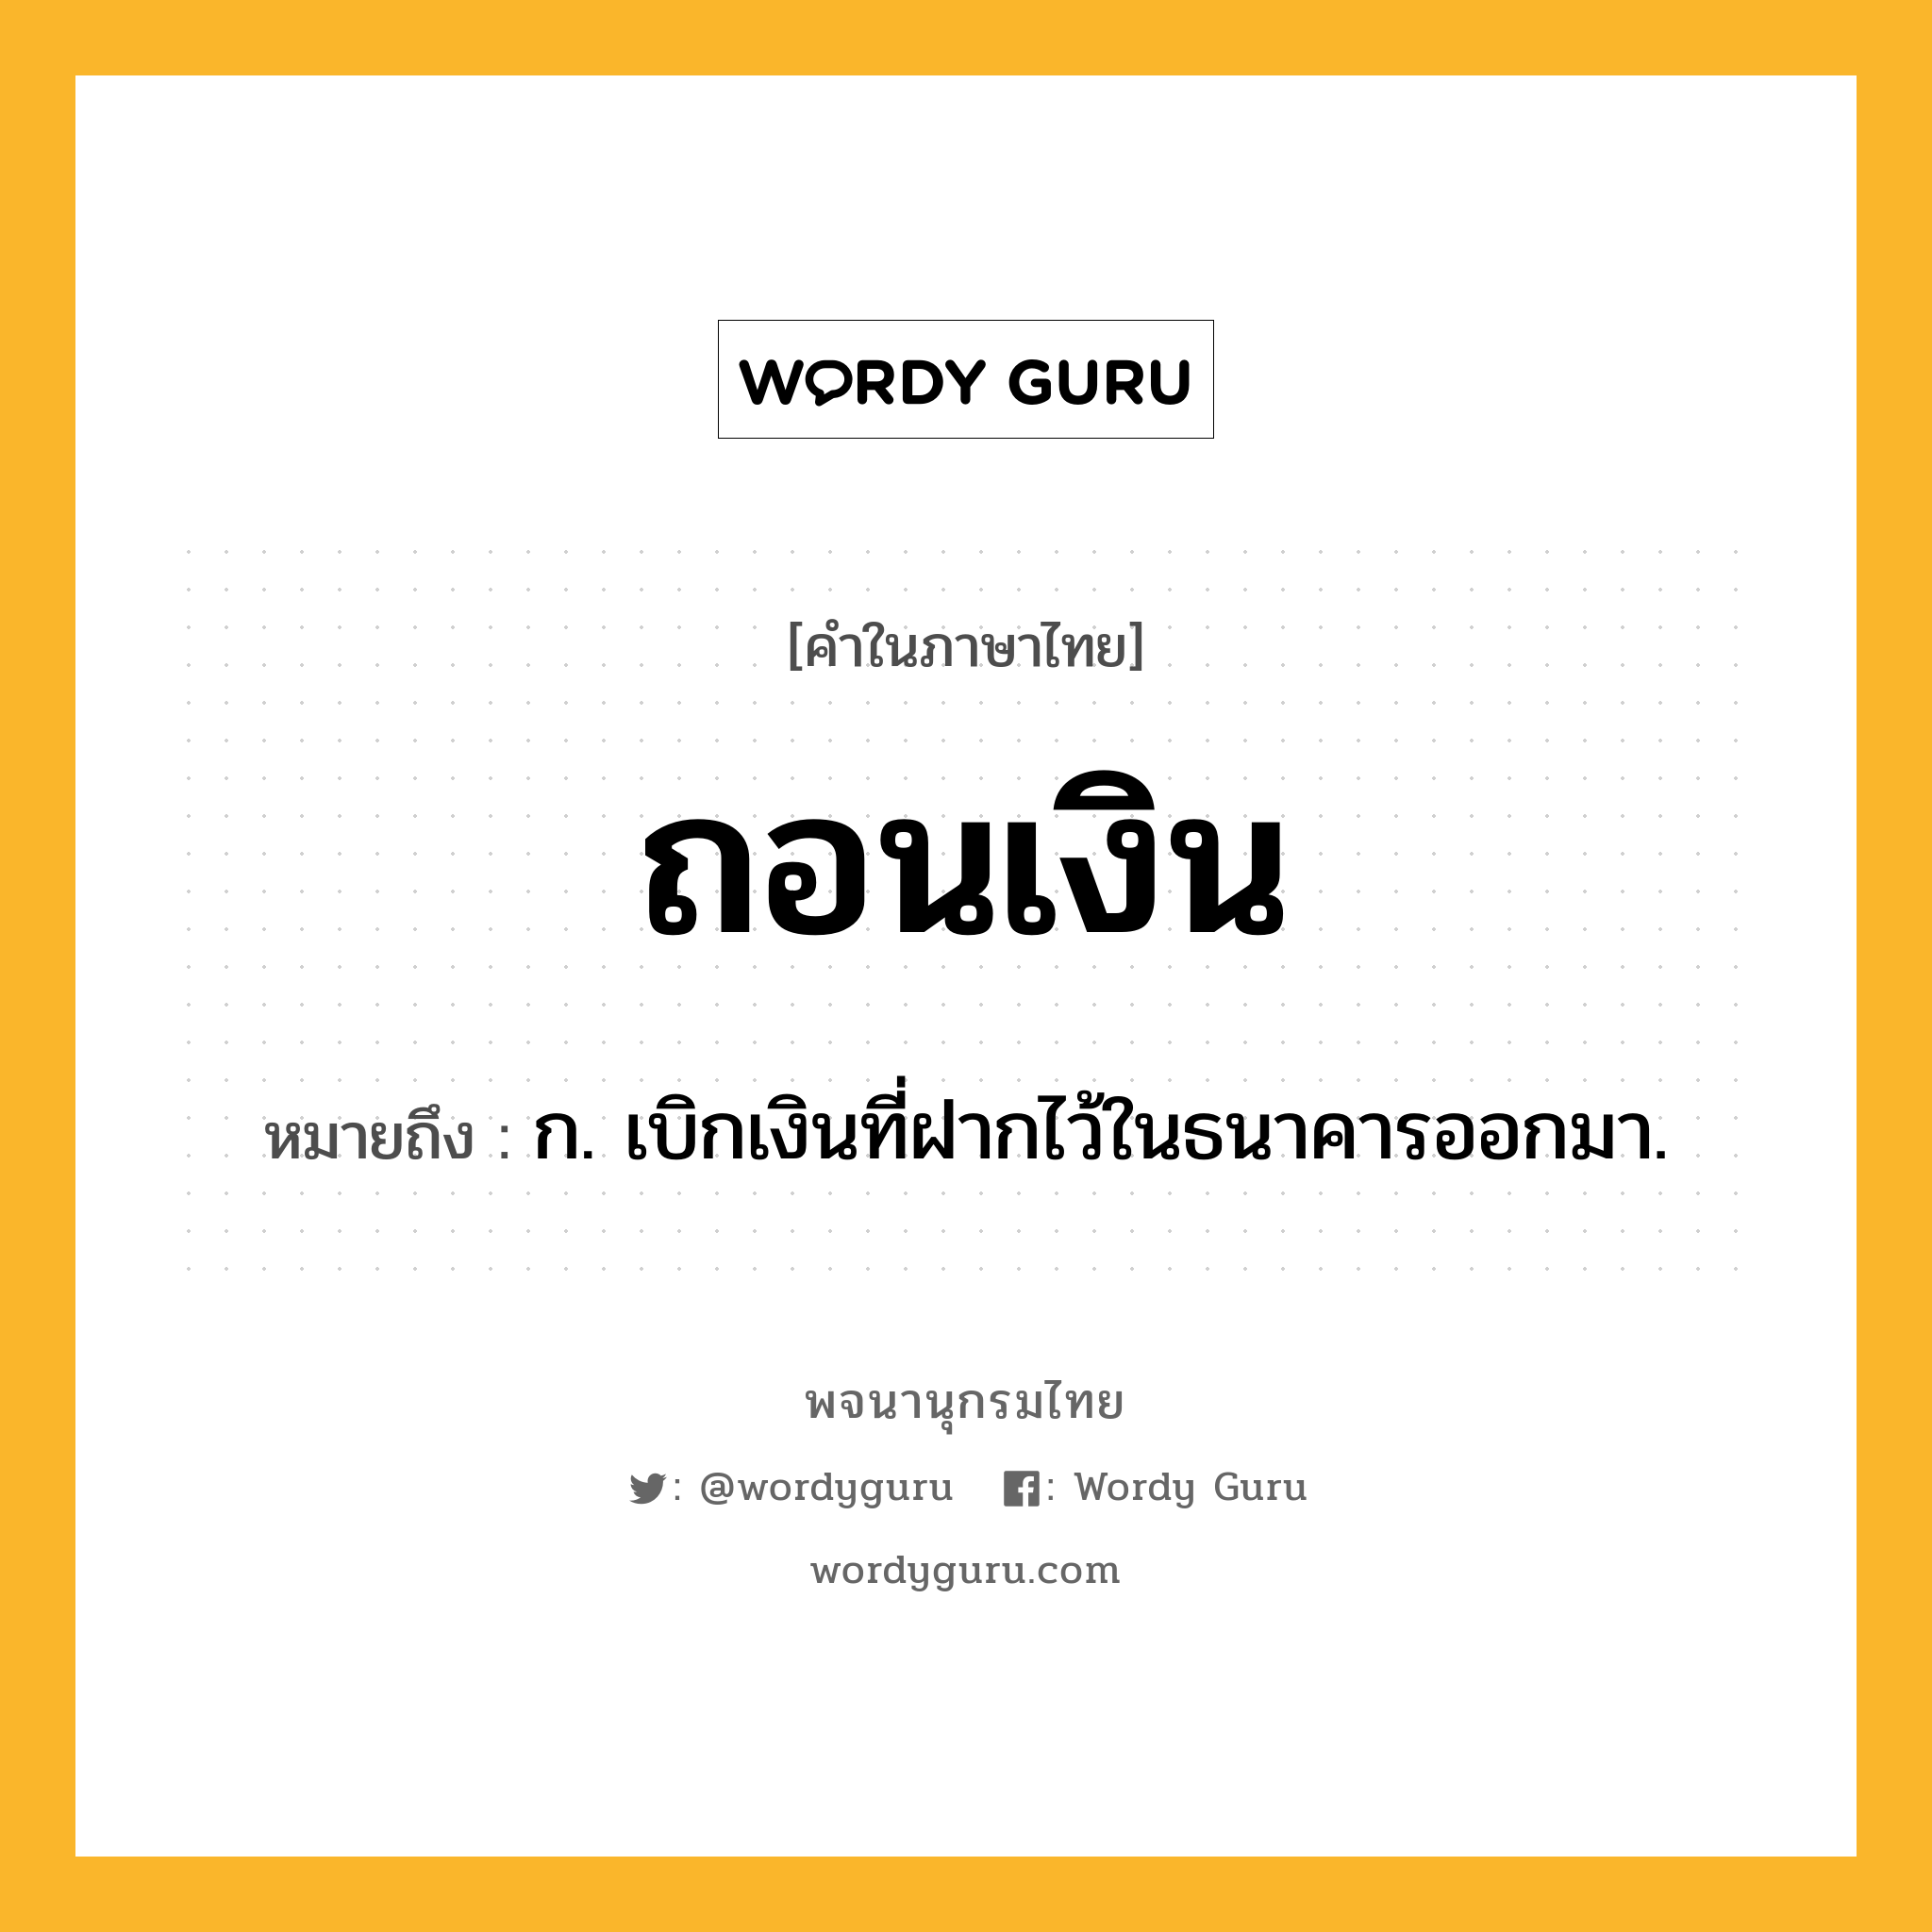 ถอนเงิน ความหมาย หมายถึงอะไร?, คำในภาษาไทย ถอนเงิน หมายถึง ก. เบิกเงินที่ฝากไว้ในธนาคารออกมา.